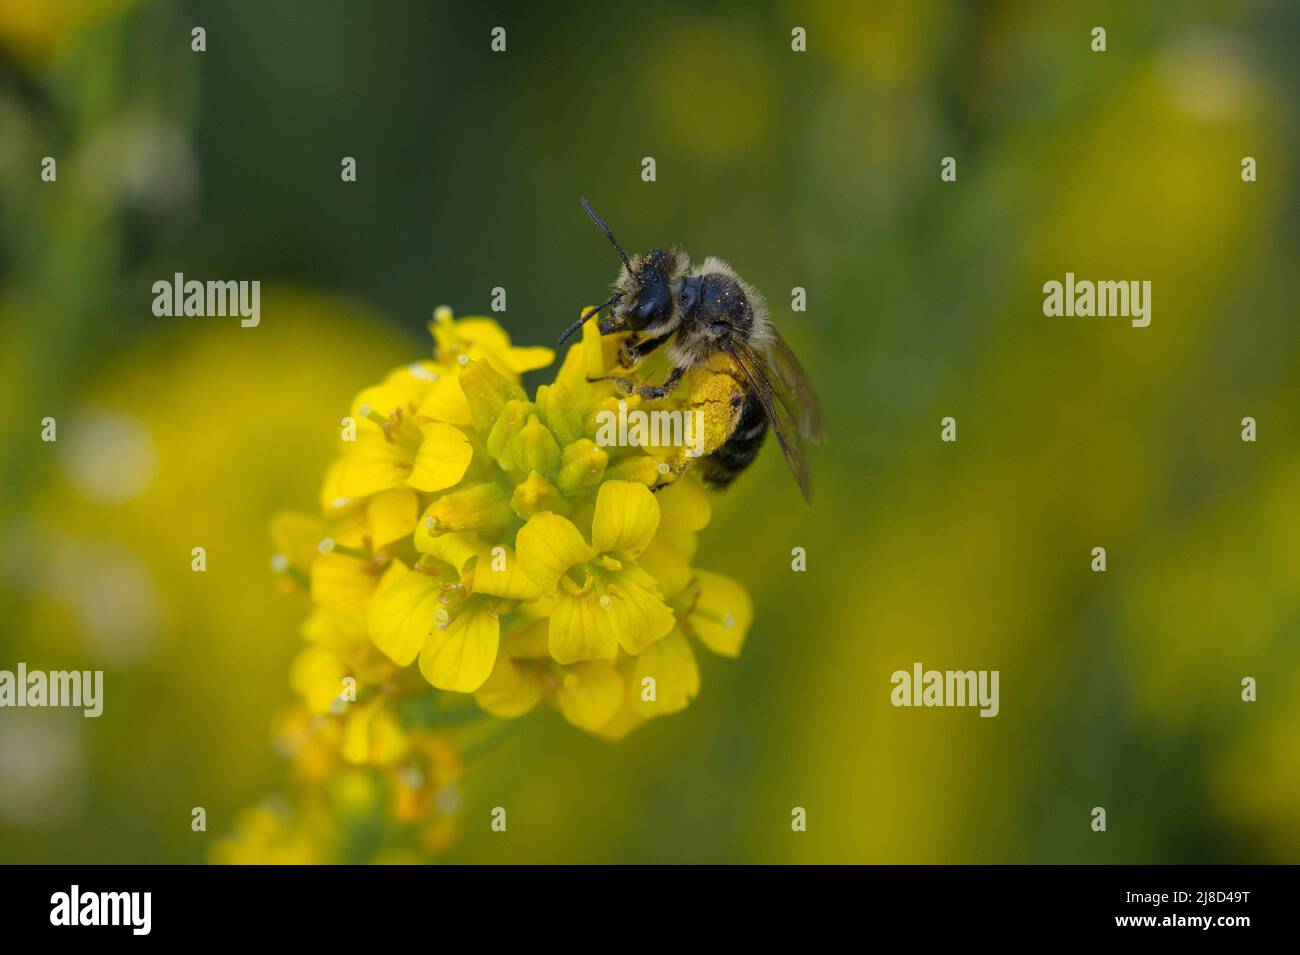 Fotografia di un'ape su fiore giallo Foto Stock